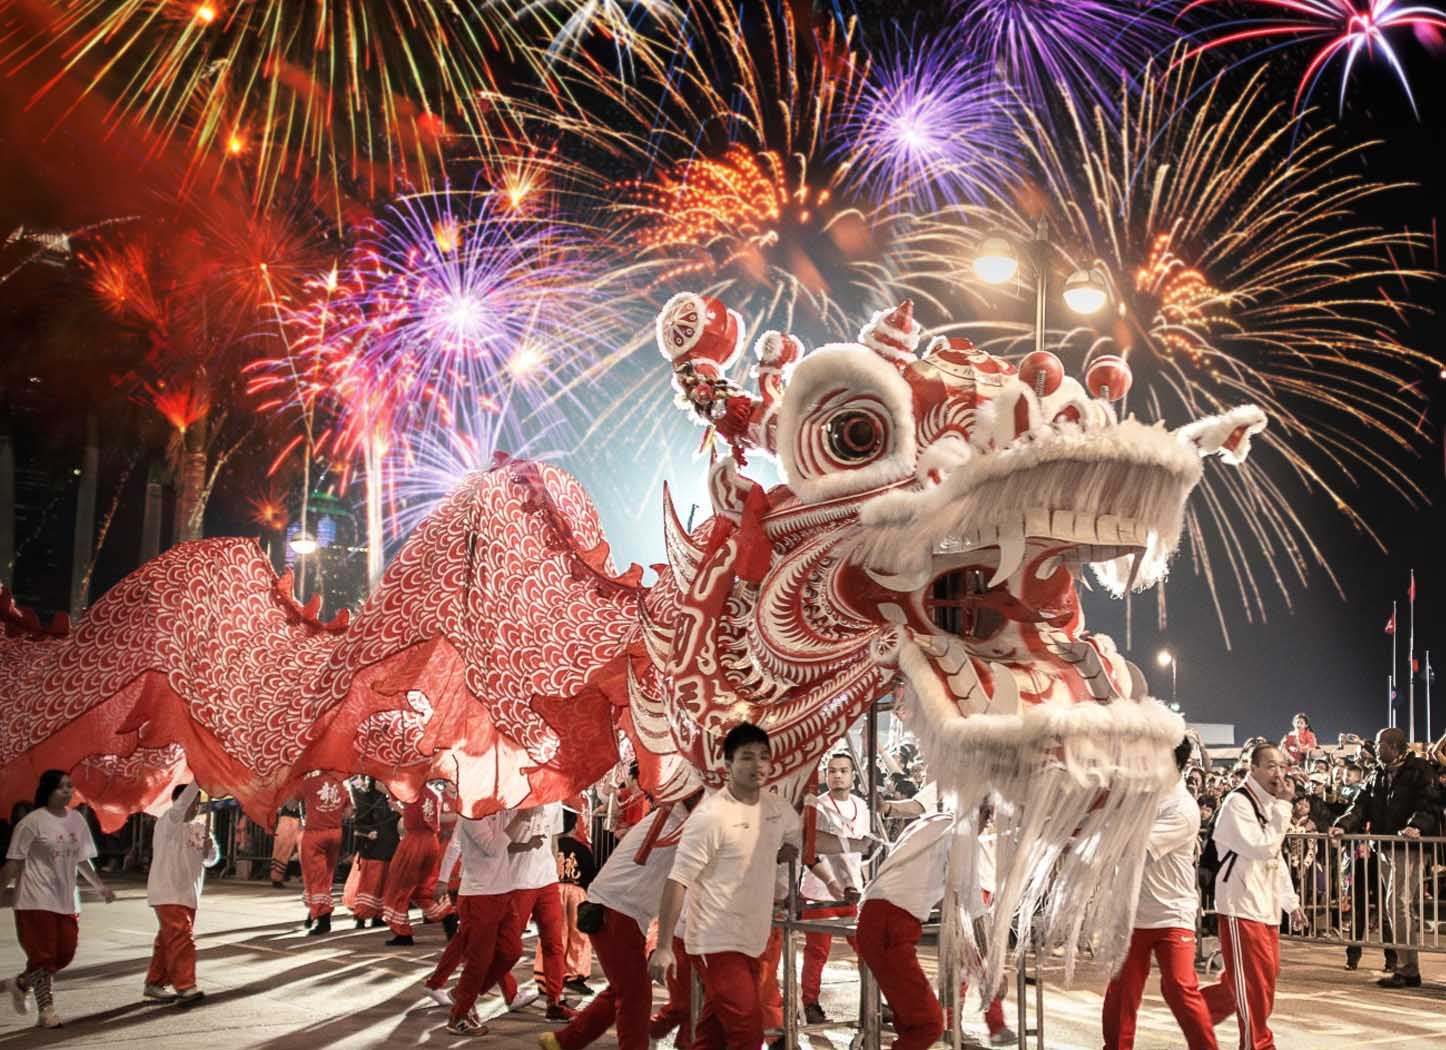 Dragones en el Obelisco, danza y música: así fueron los festejos por el Año Nuevo Chino, que continúan este domingo